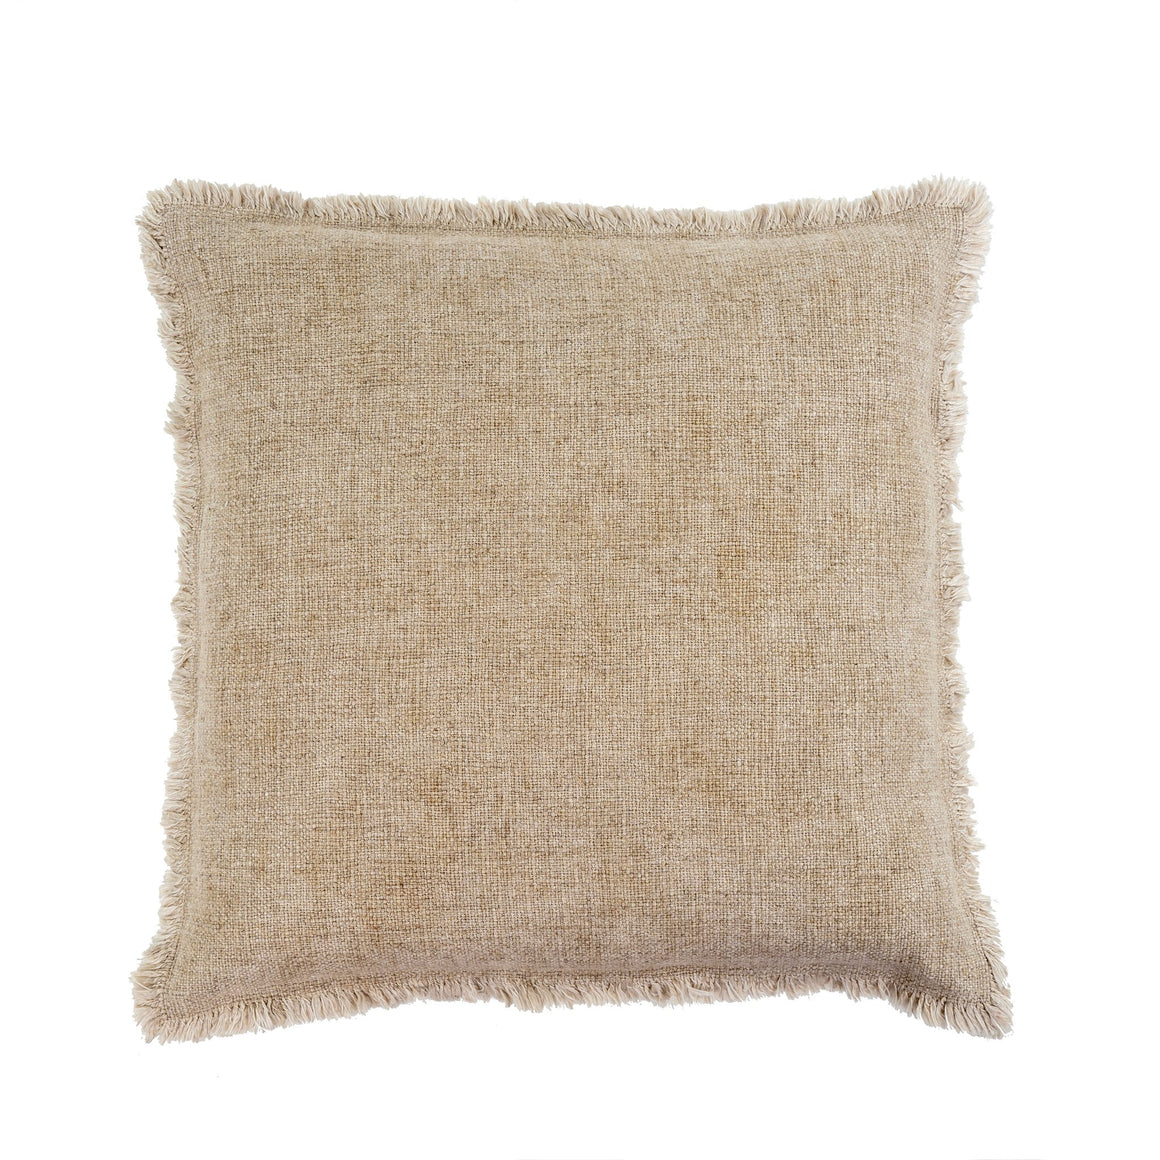 Frayed Natural Linen Pillow